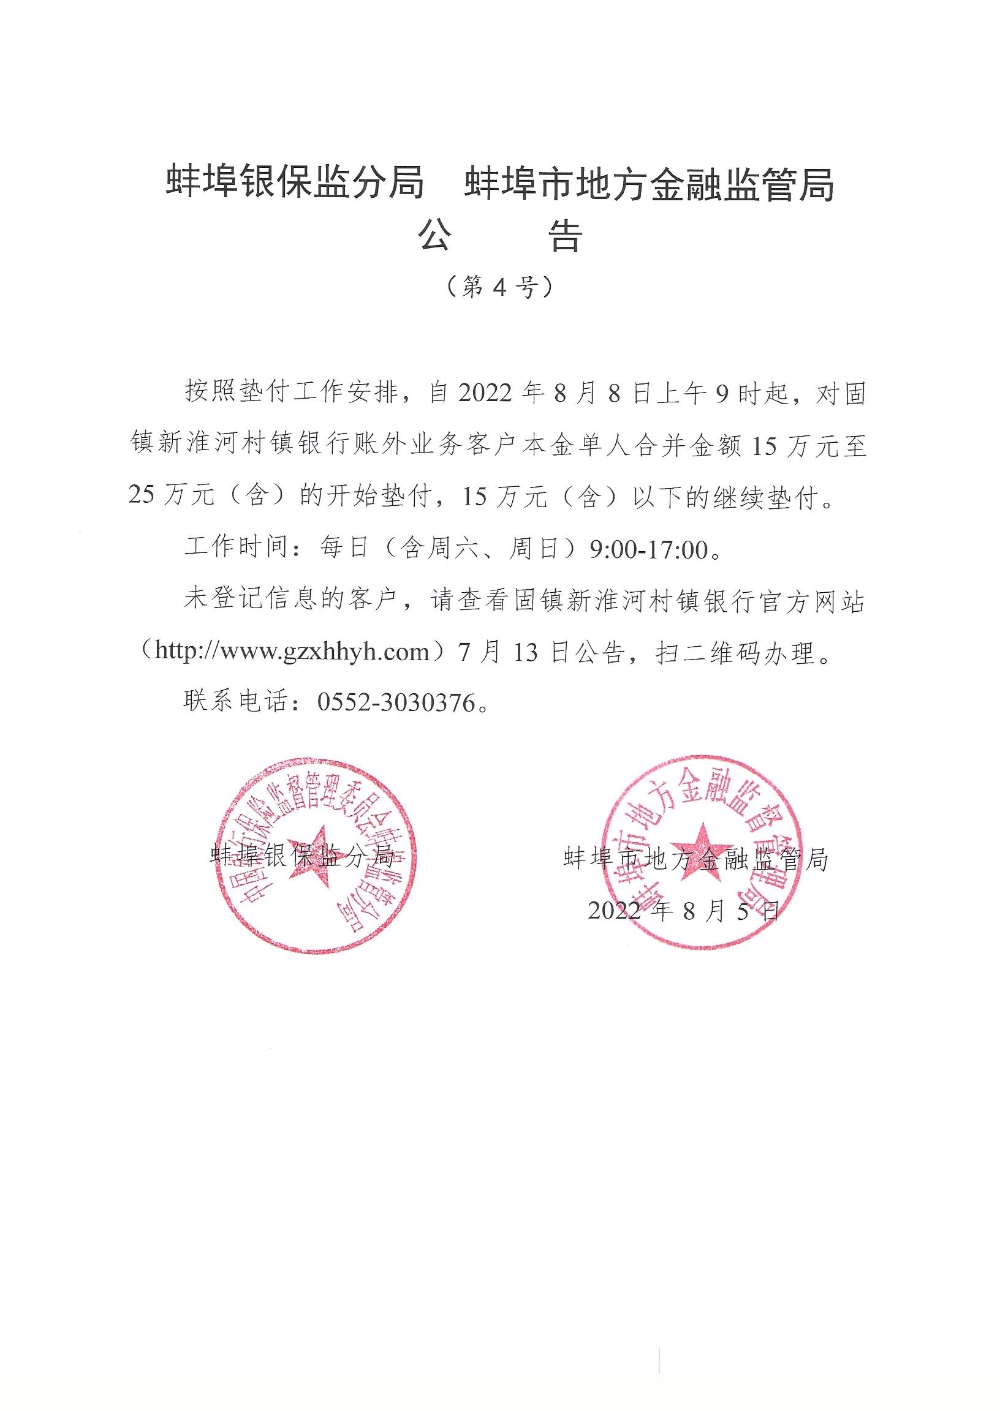 河南安徽村镇银行第四批垫付8月8日初阶：金额15万元至25万元